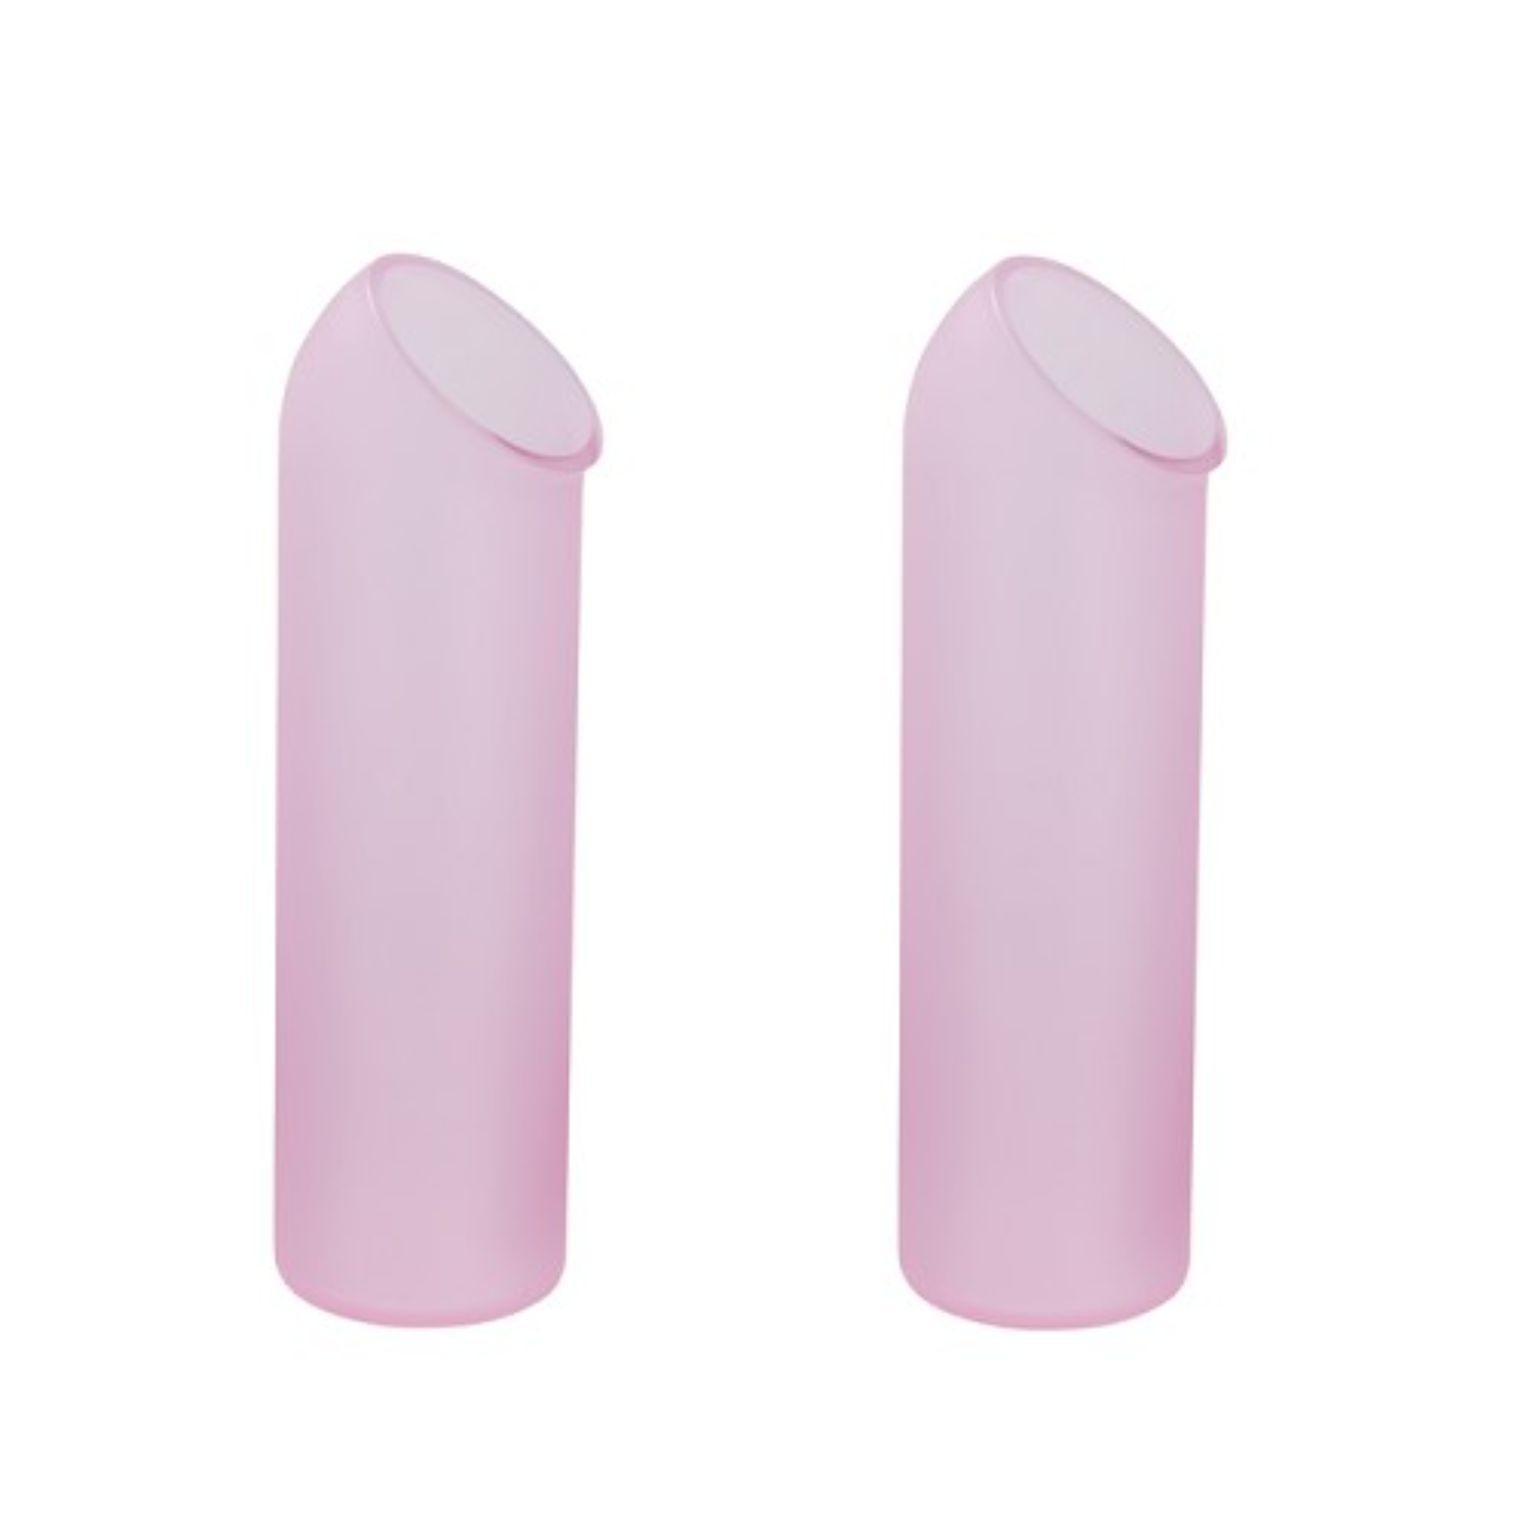 Set de 2 carafes Pink by Pulpo
Dimensions : D8,5 x H30 cm
Matériaux : verre fait main

Choisissez-les, versez-les, roulez-les et tenez-les ; un kaléidoscope de couleurs, de formes et de textures vous attend. Les collections de pot-pourri de la